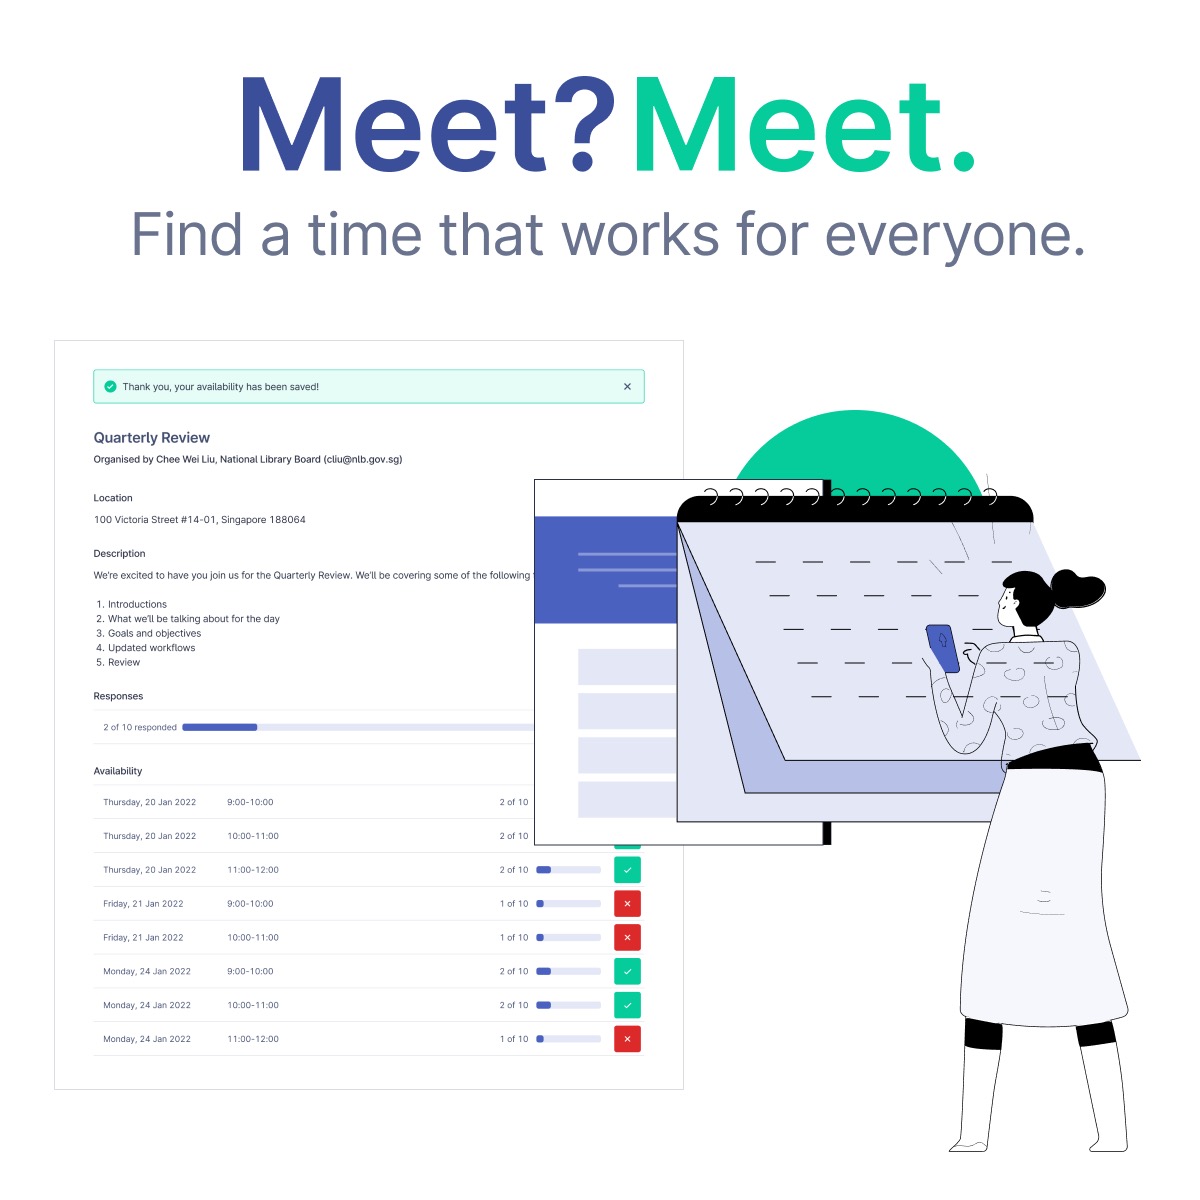 MeetMeet product demo image